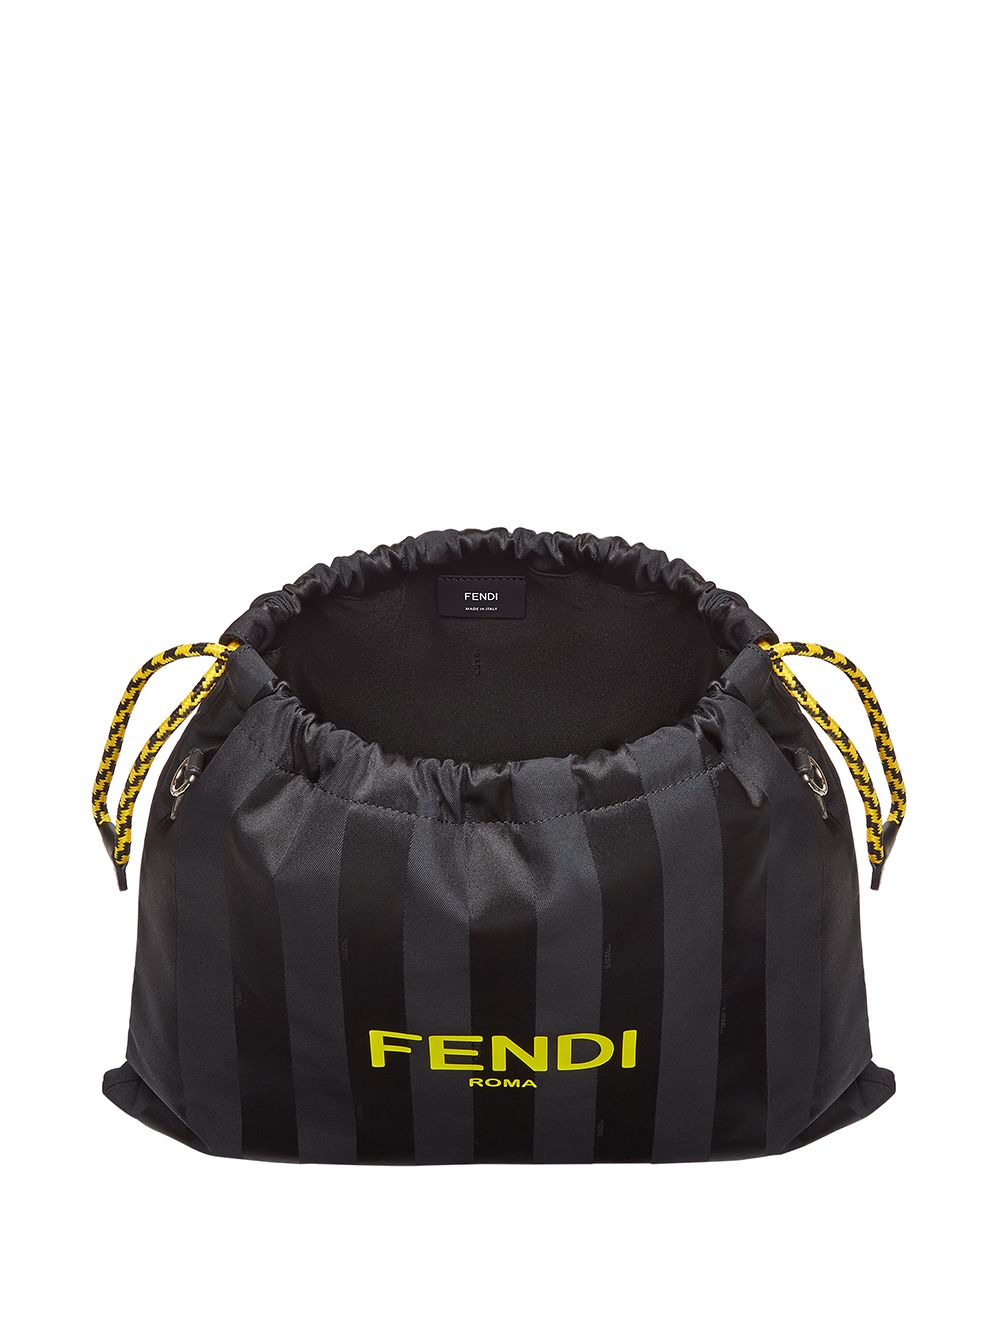 фото Fendi полосатая сумка среднего размера с кулиской